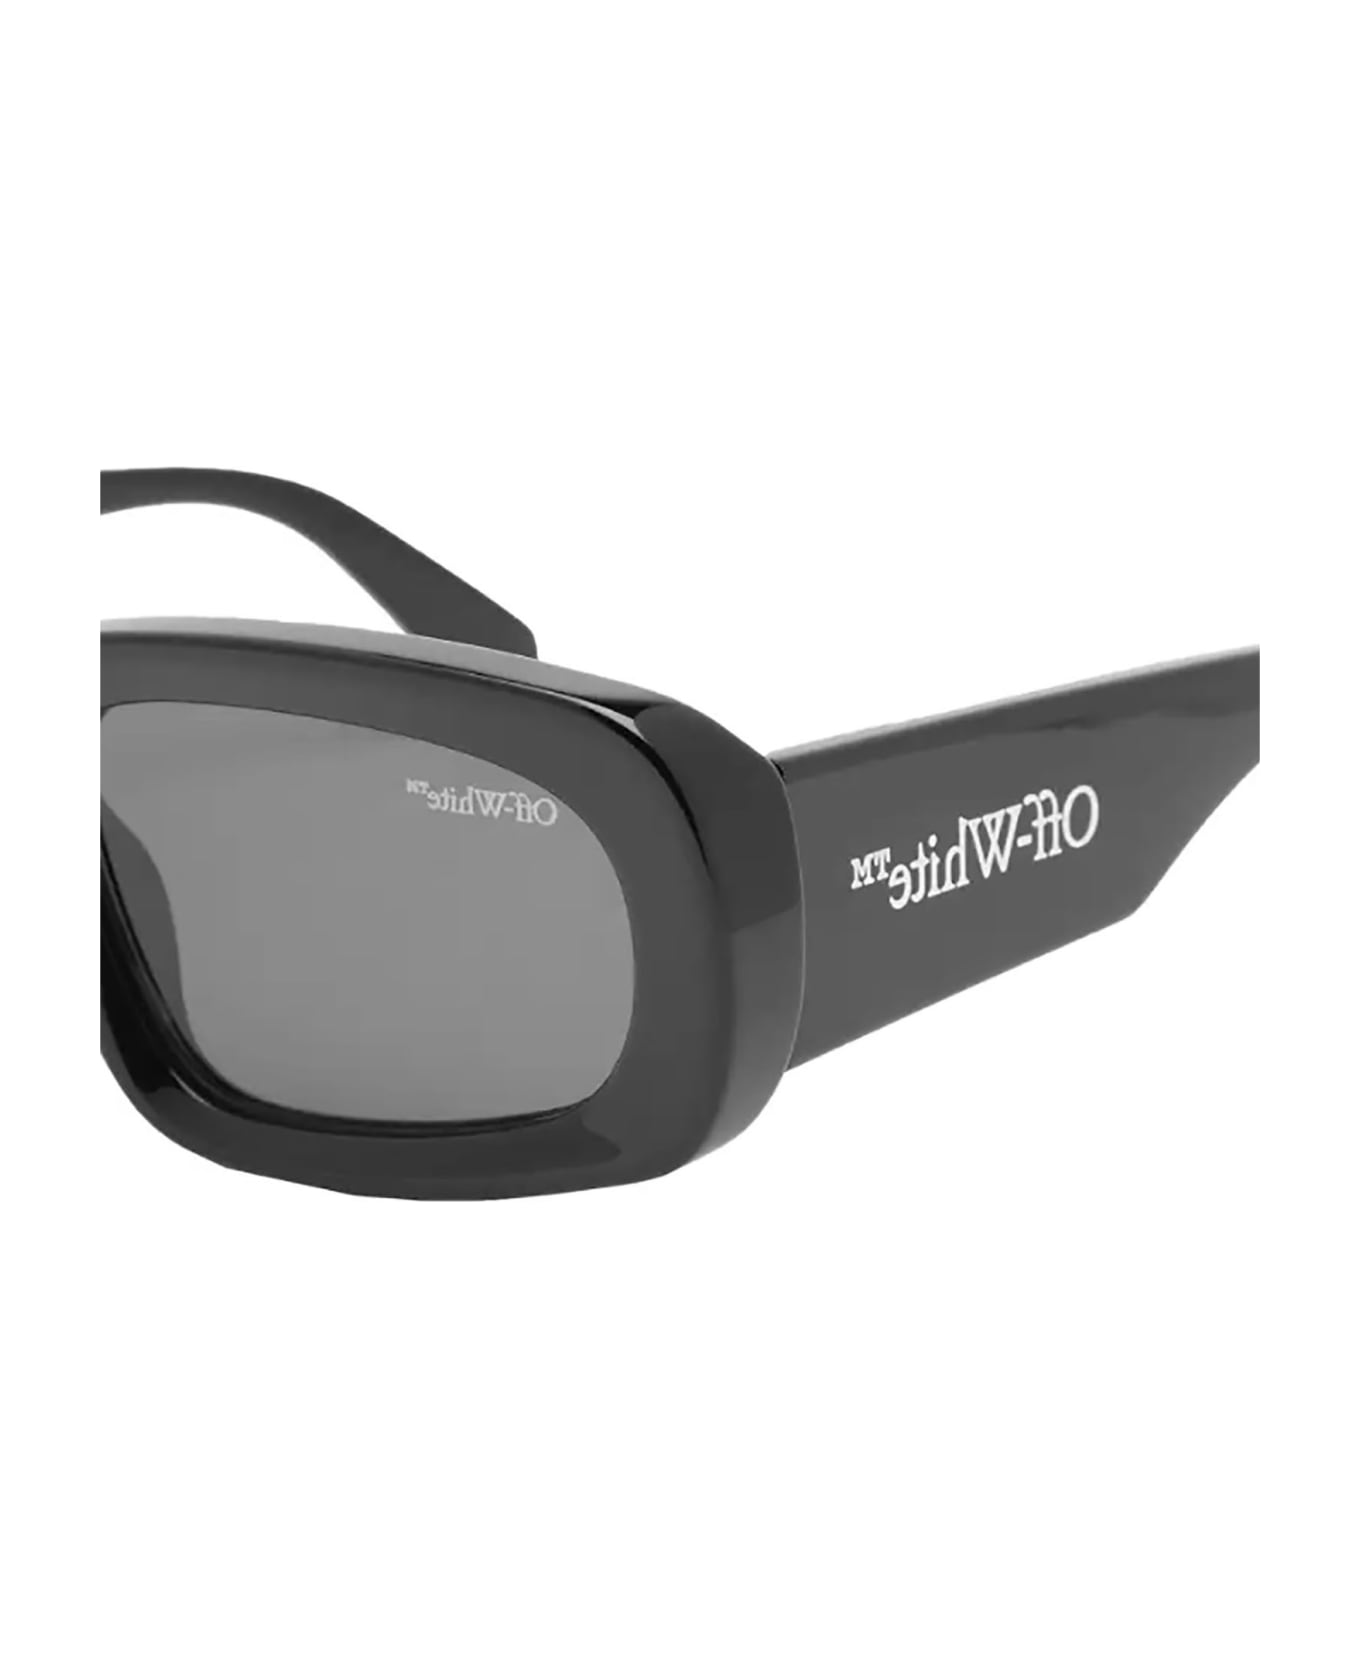 Off-White AUSTIN SUNGLASSES Sunglasses - Black